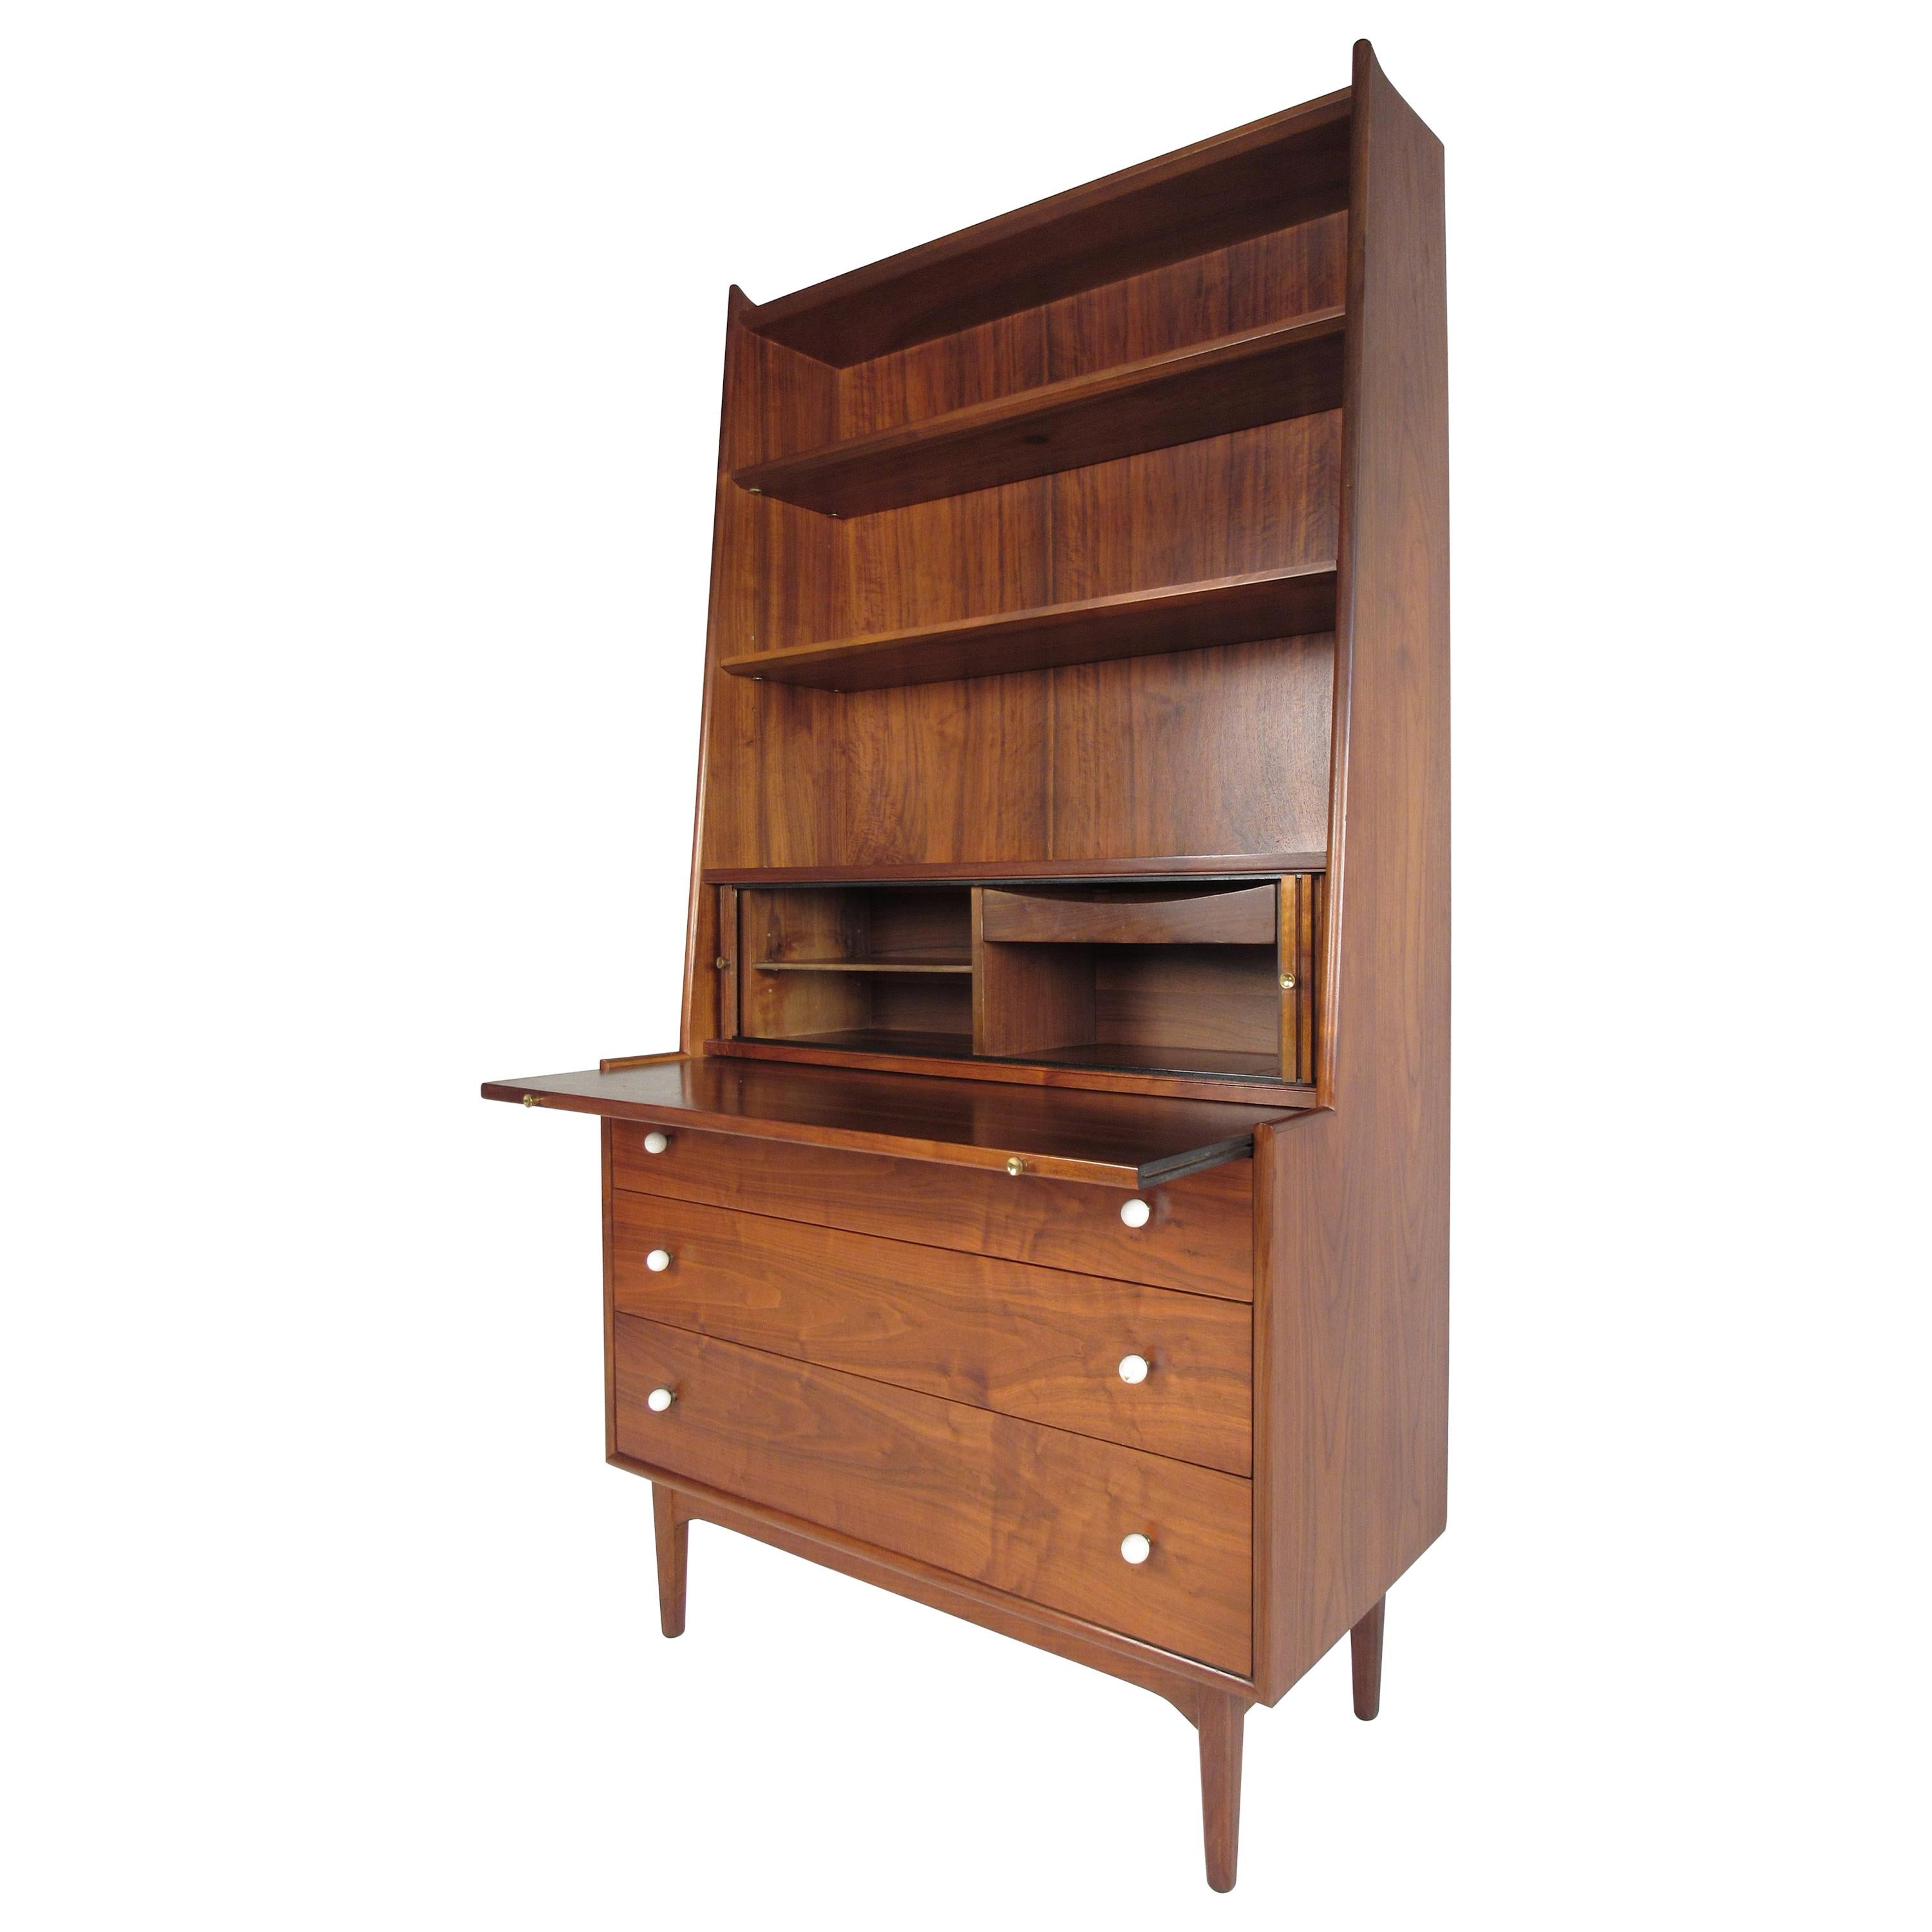 Secretary Desk by Kipp Stewart for Drexel "Declaration" Furniture Line